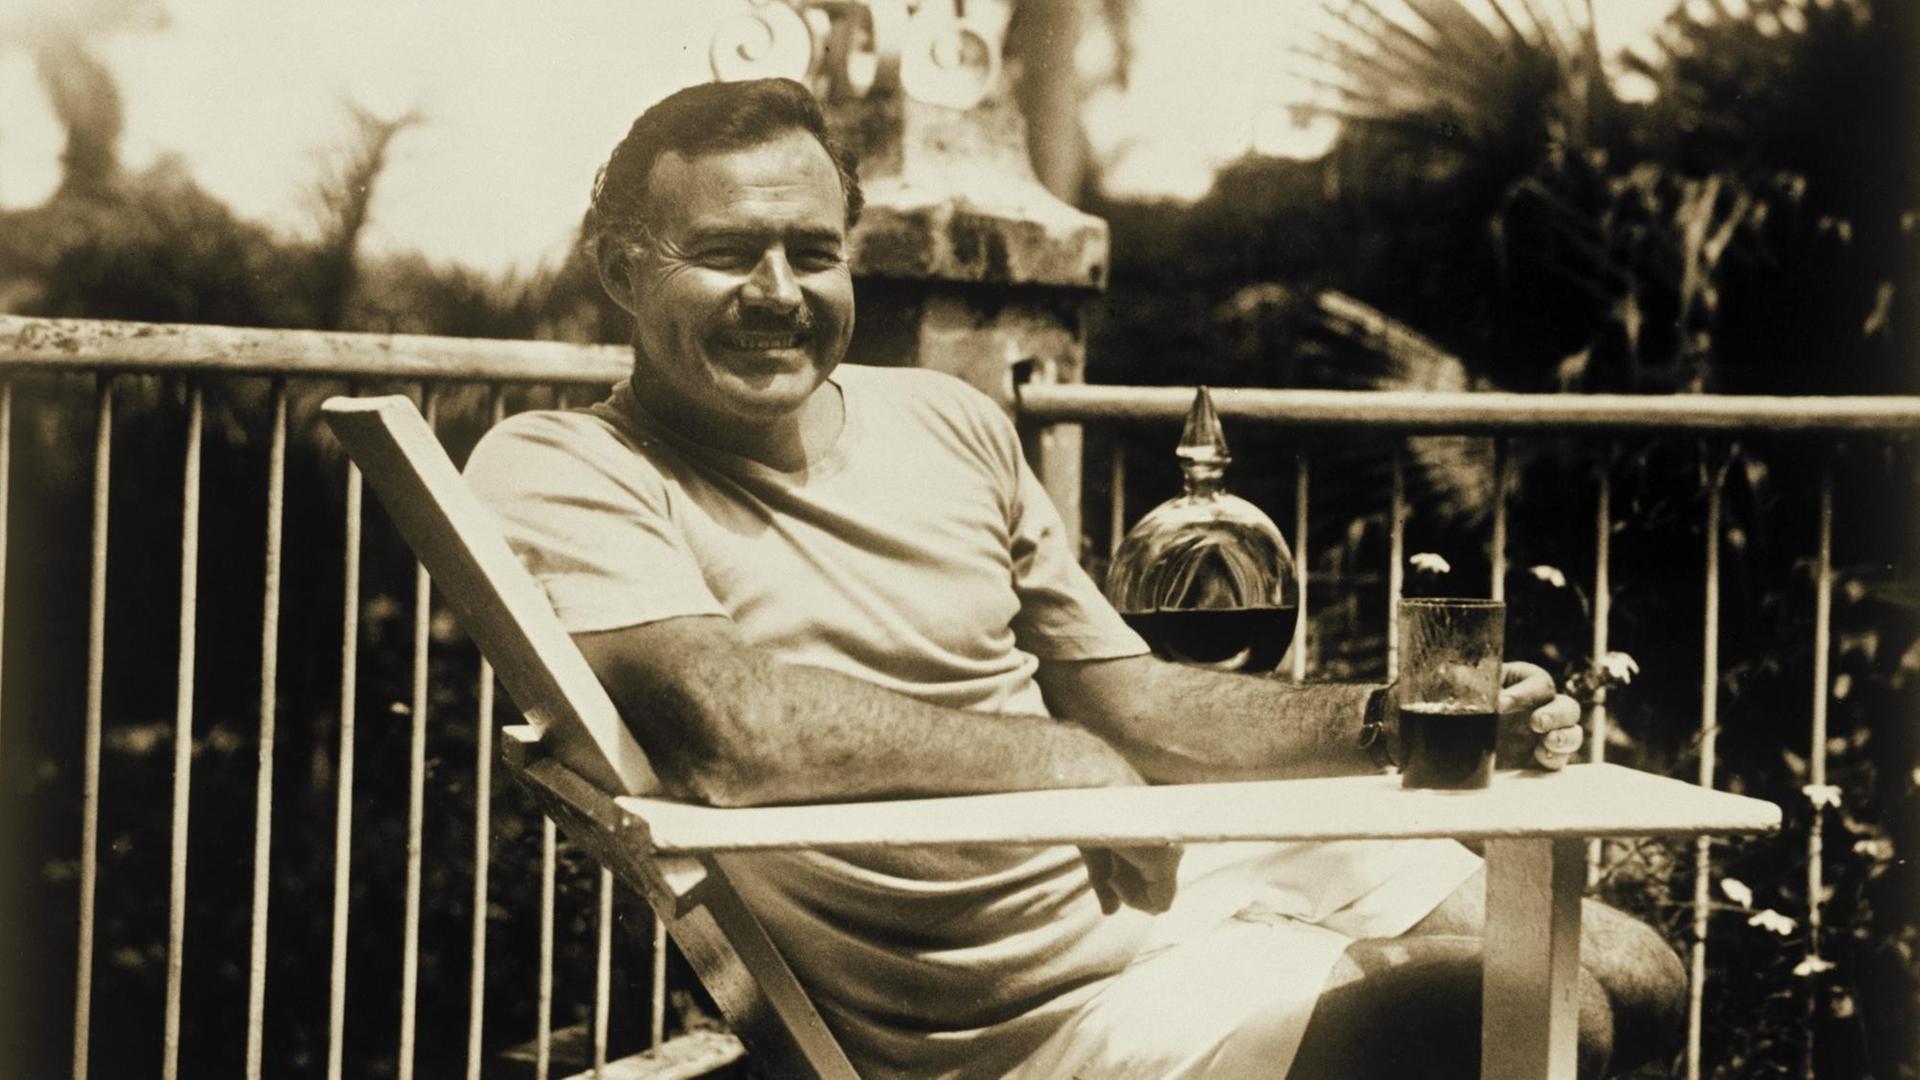 Hemingway sitzt mit einem Drink auf der Terrasse und lächelt in die Kamera.